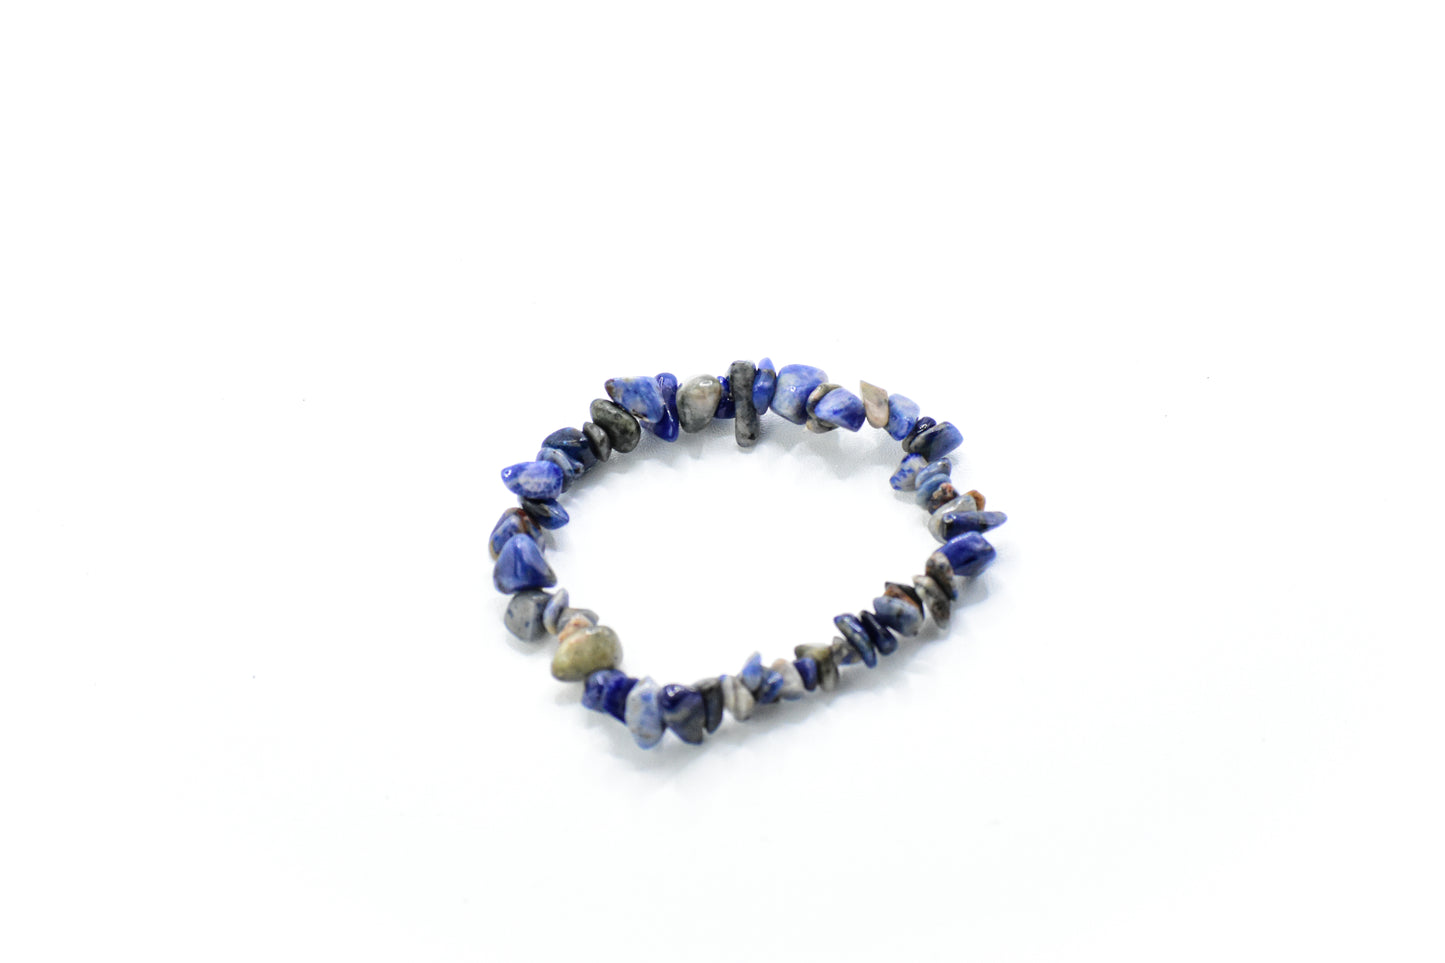 Raw lapis Lazuli bracelet